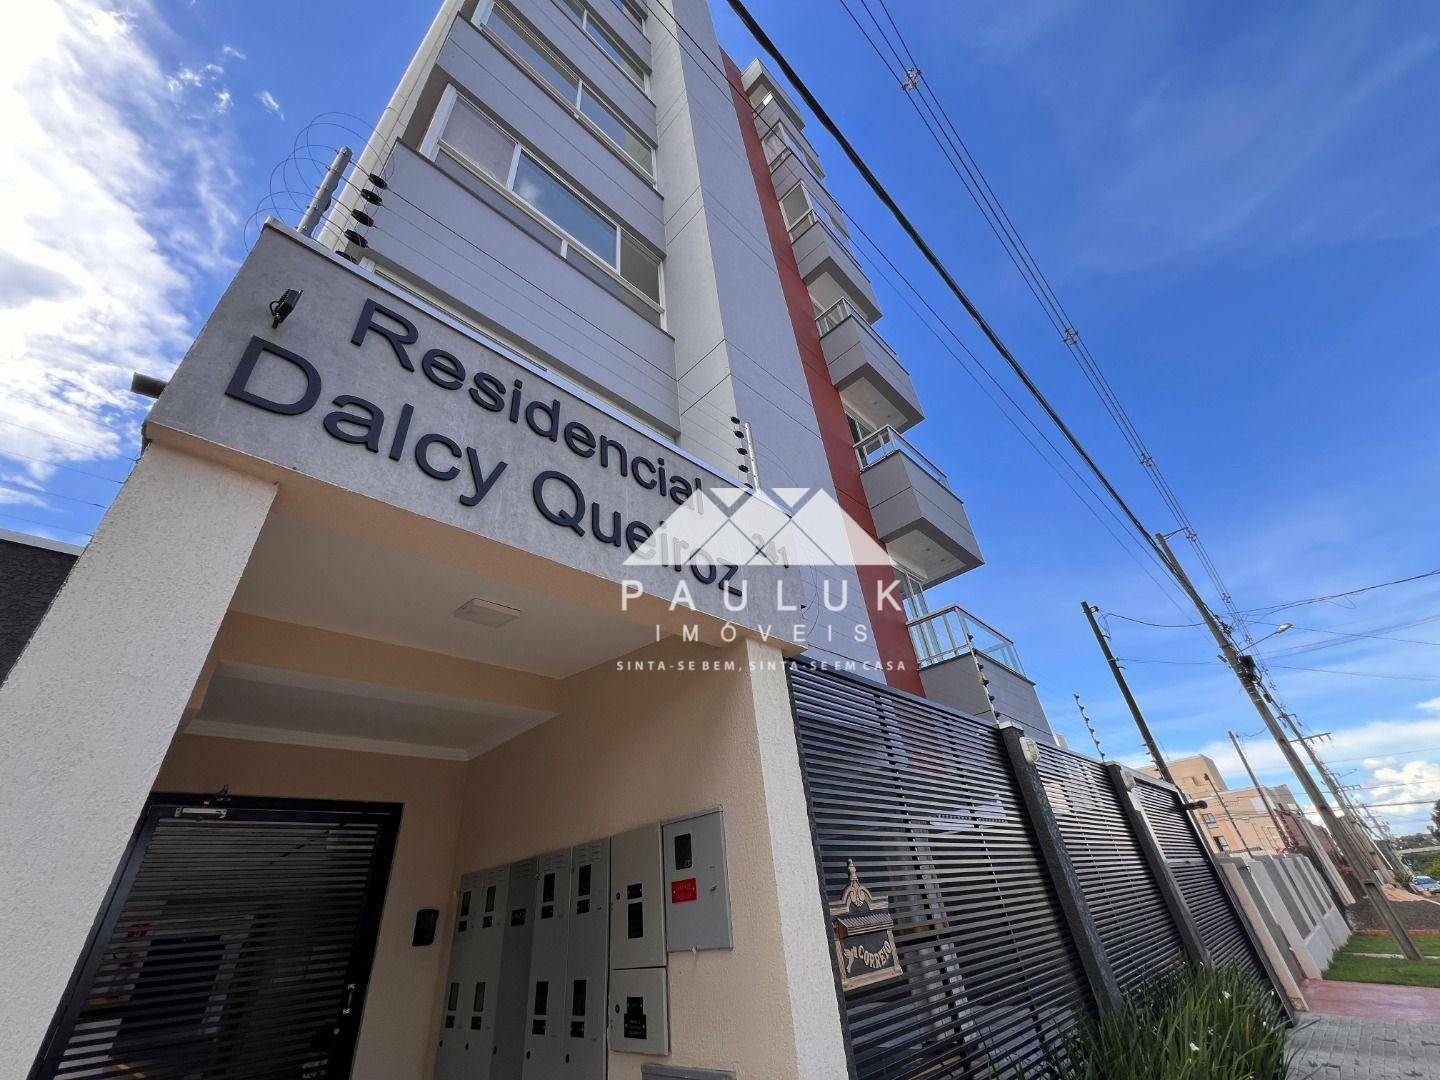 Apartamento com 2 Dormitórios Sendo 1 Suíte à venda Por R$ 388.000 - Edifício Residencial Dalcy Quei | PAULUK IMÓVEIS | Portal OBusca